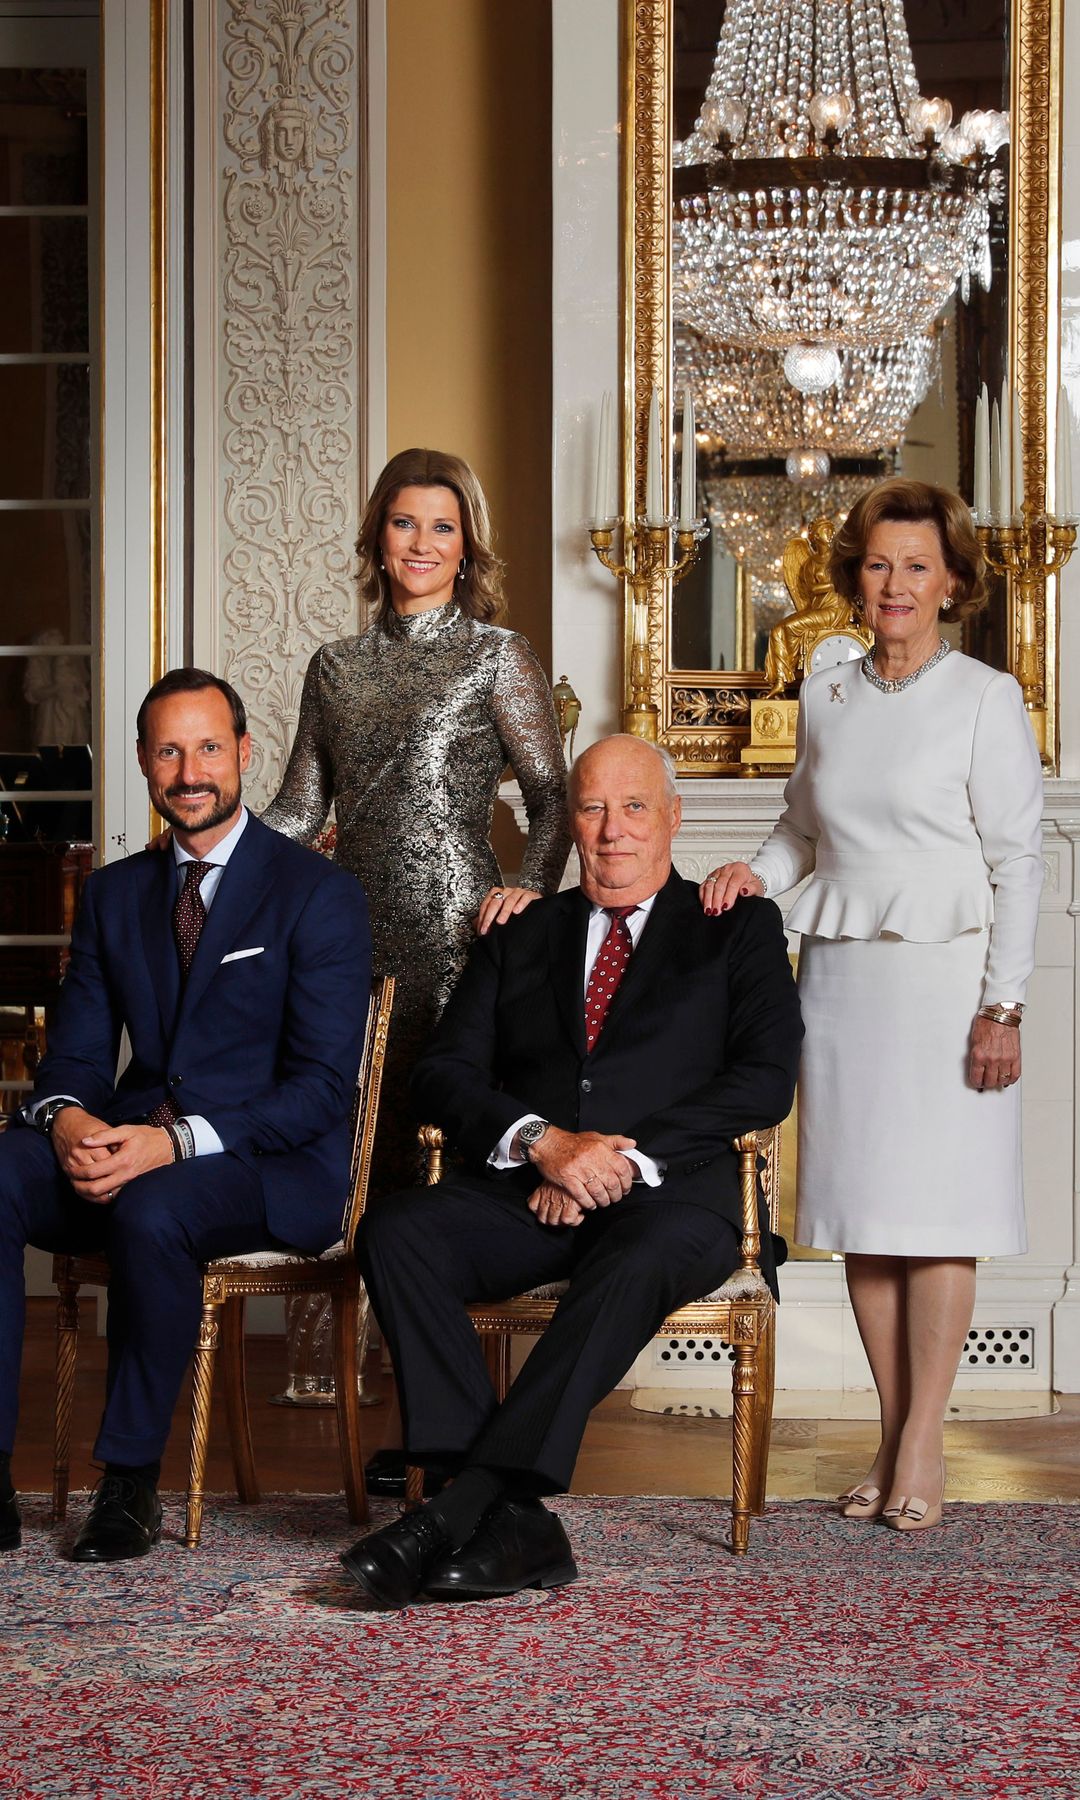 Retrato oficial de la Familia Real Noruega del año 2017. Los reyes Harald y Sonia con sus dos hijos, el príncipe heredero Haakon y la princesa Marta Luisa